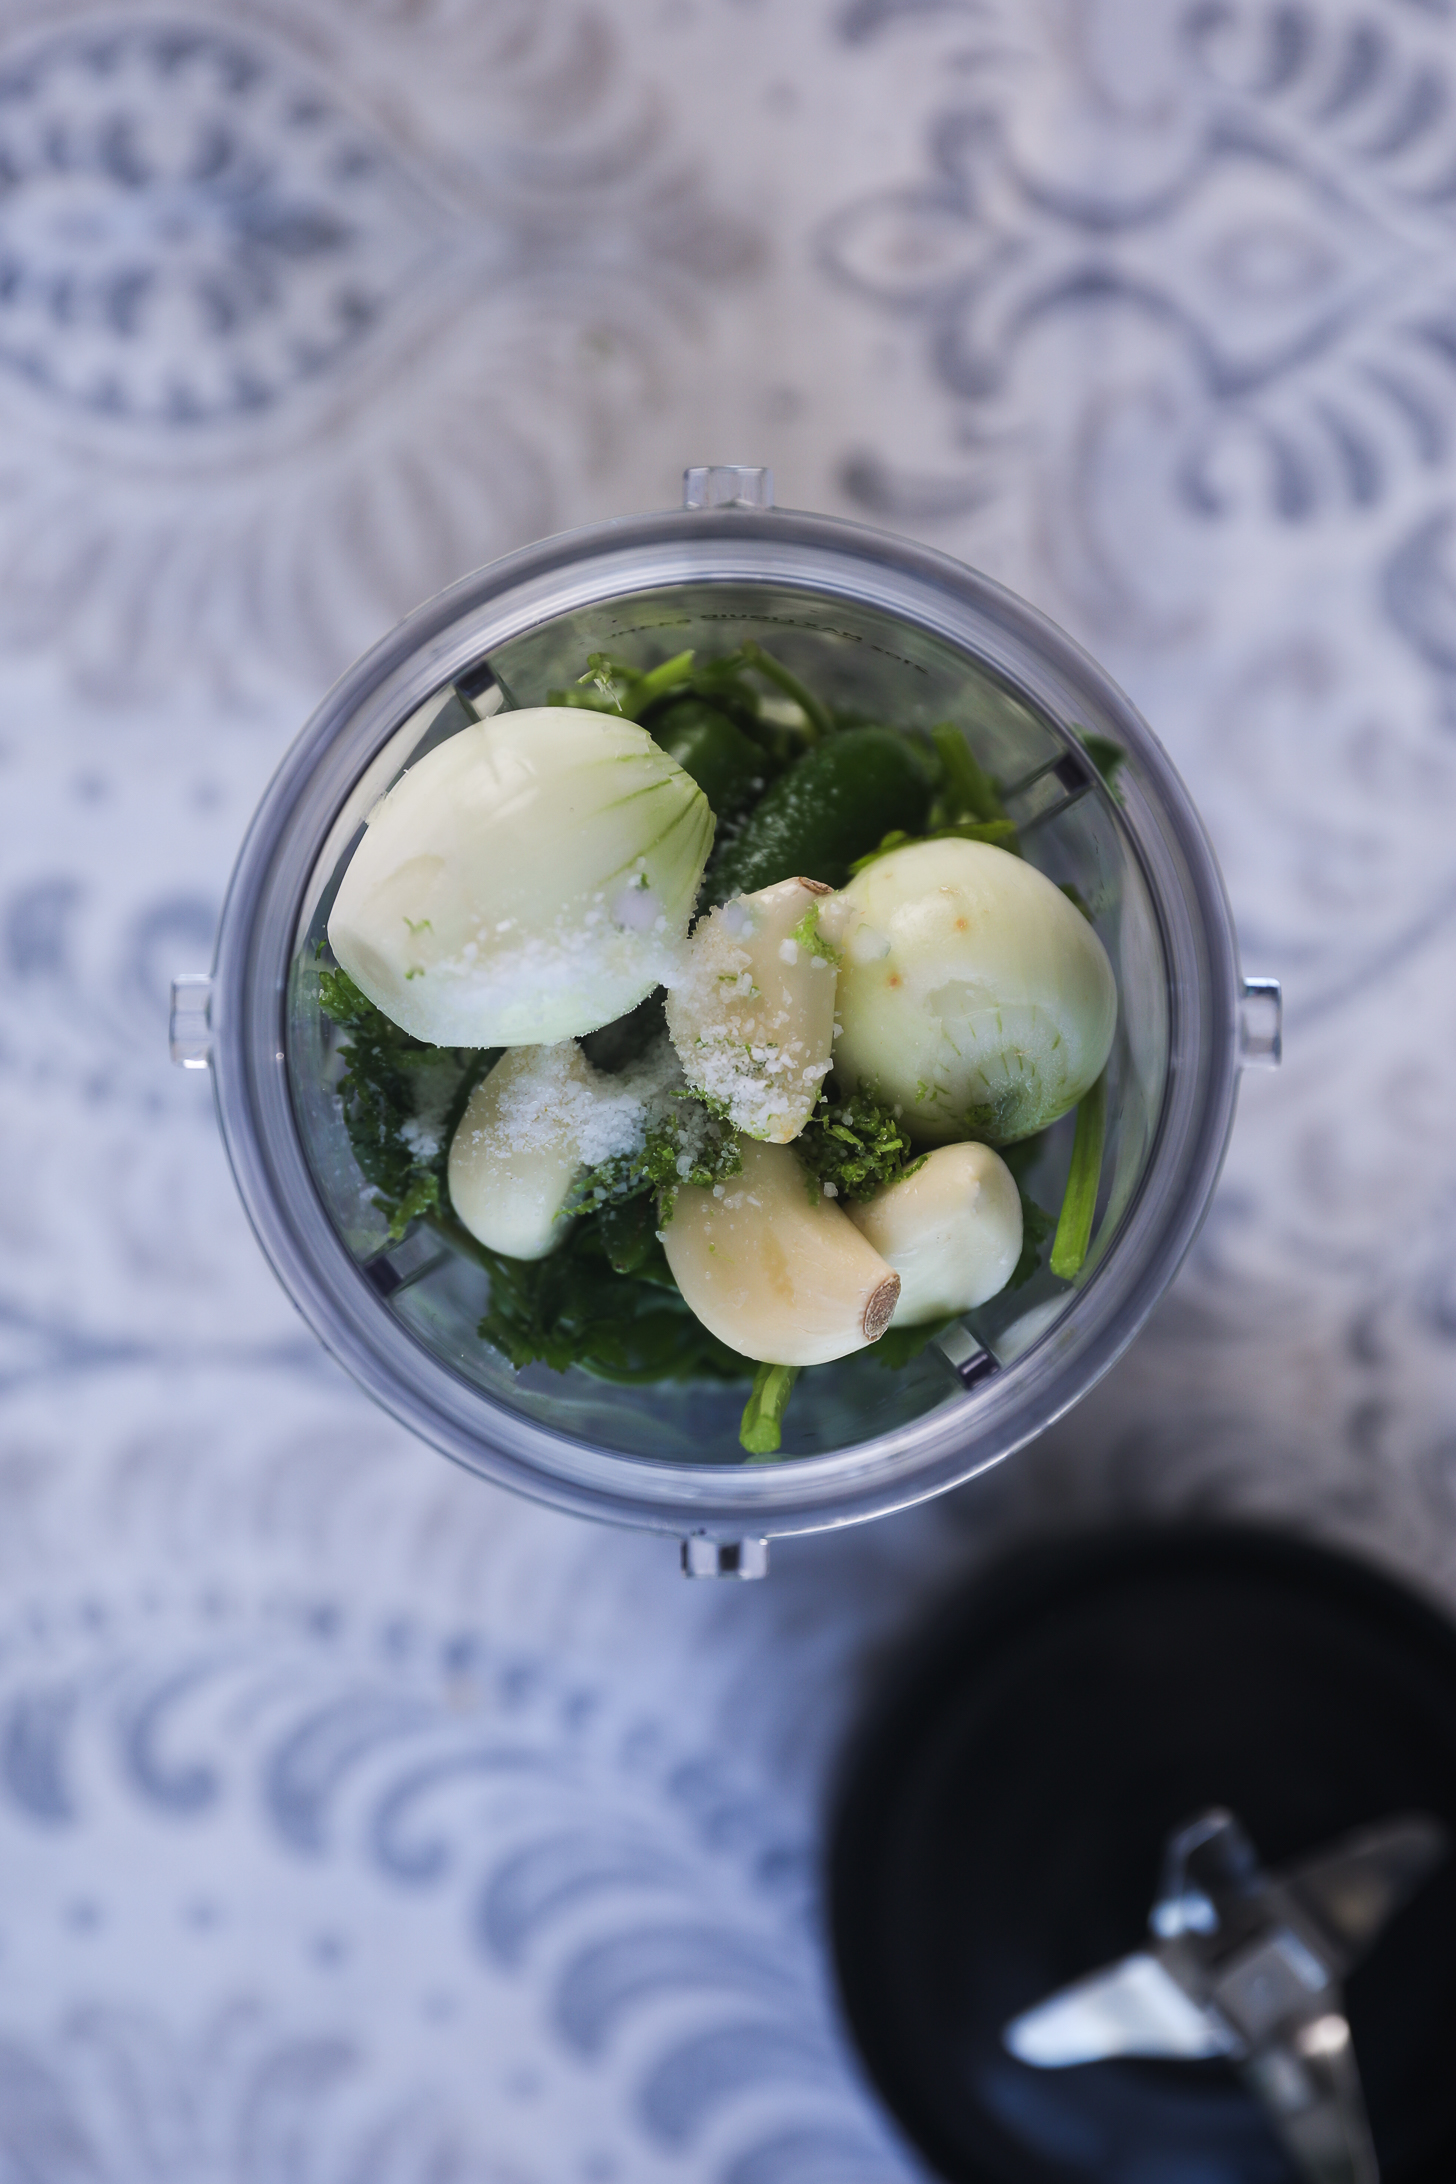 تصویر نمای بالا از یک فنجان مخلوط کن سبزی، موسیر، سیر و نمک.